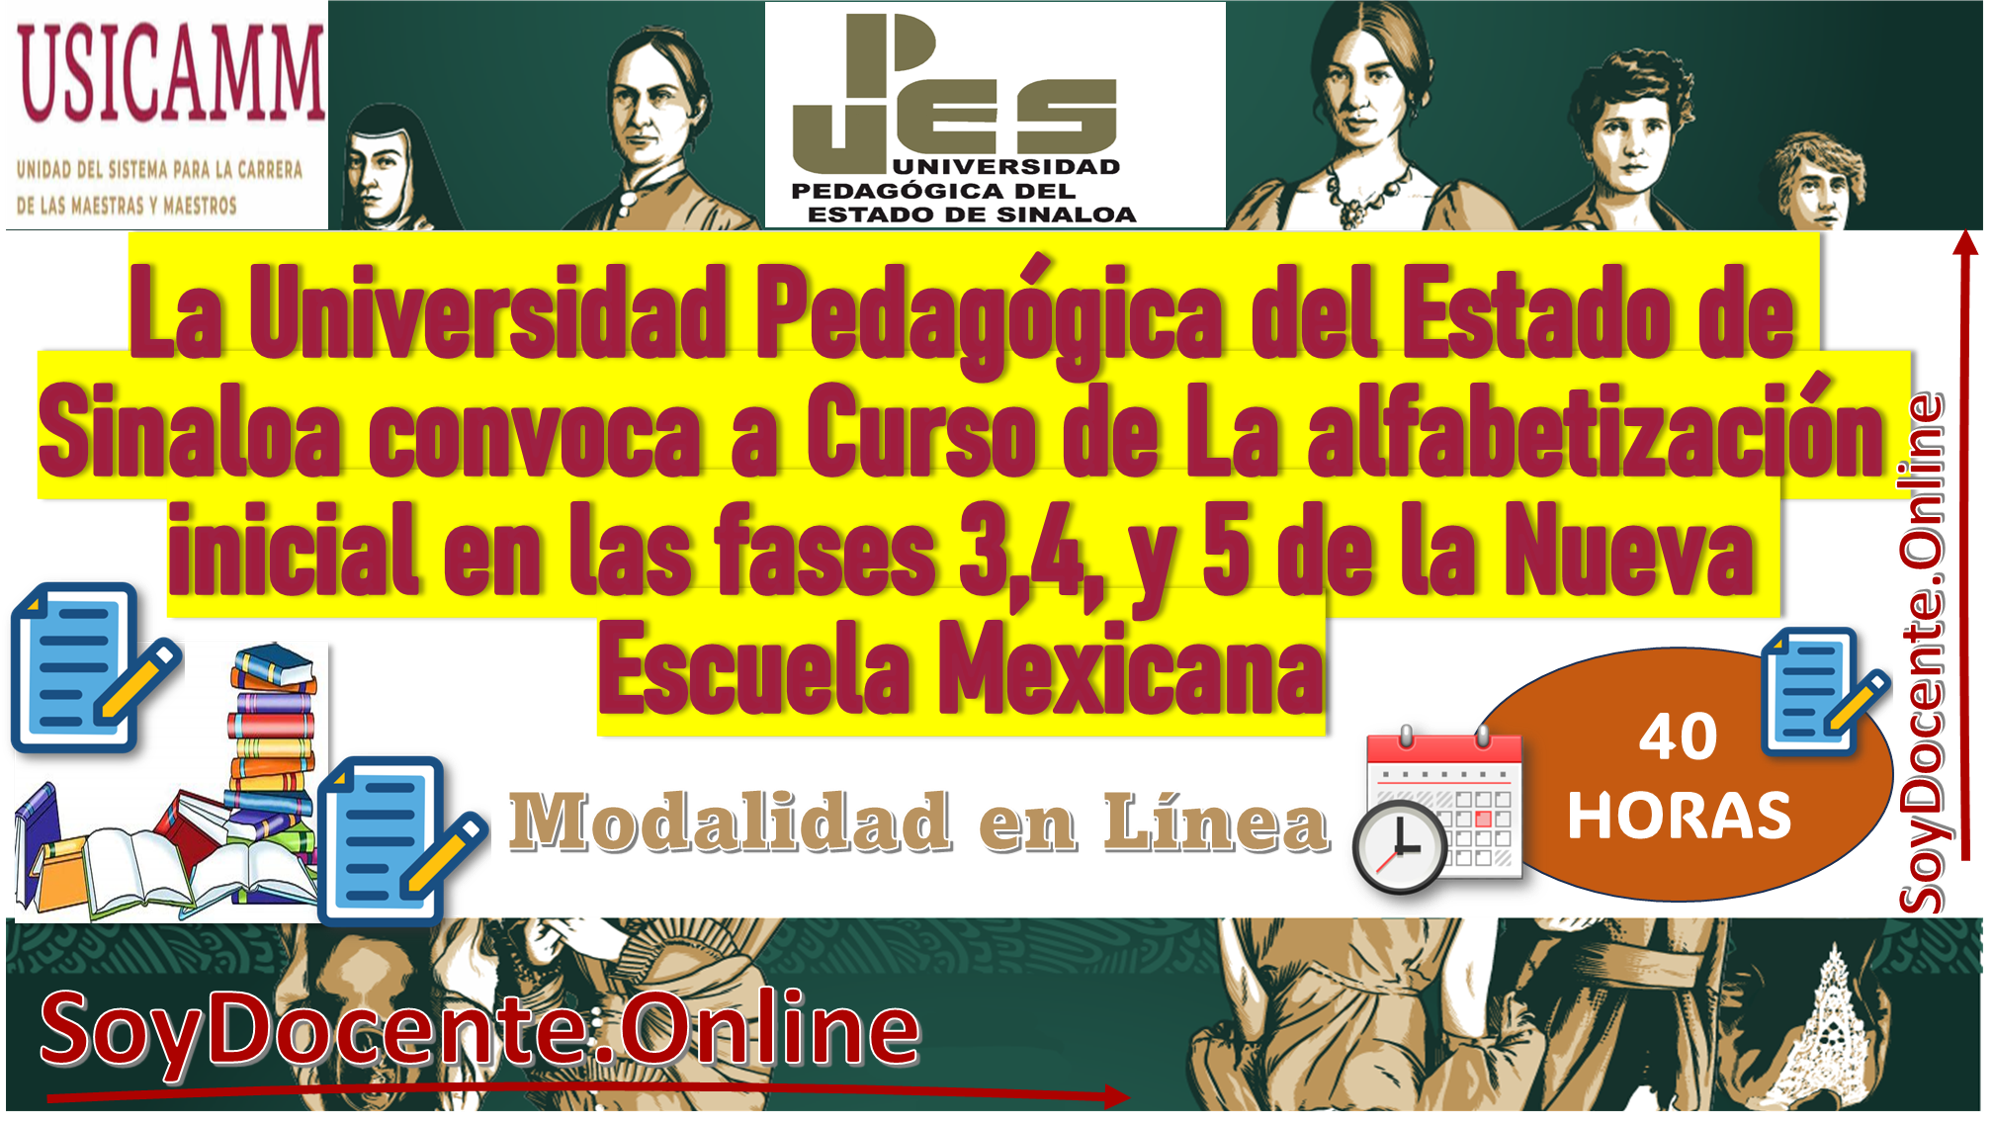 La Universidad Pedagógica del Estado de Sinaloa convoca a Curso de La alfabetización inicial en las fases 3,4, y 5 de la Nueva Escuela Mexicana (40 horas), para el Programa de Educación Continua por (USICAMM)